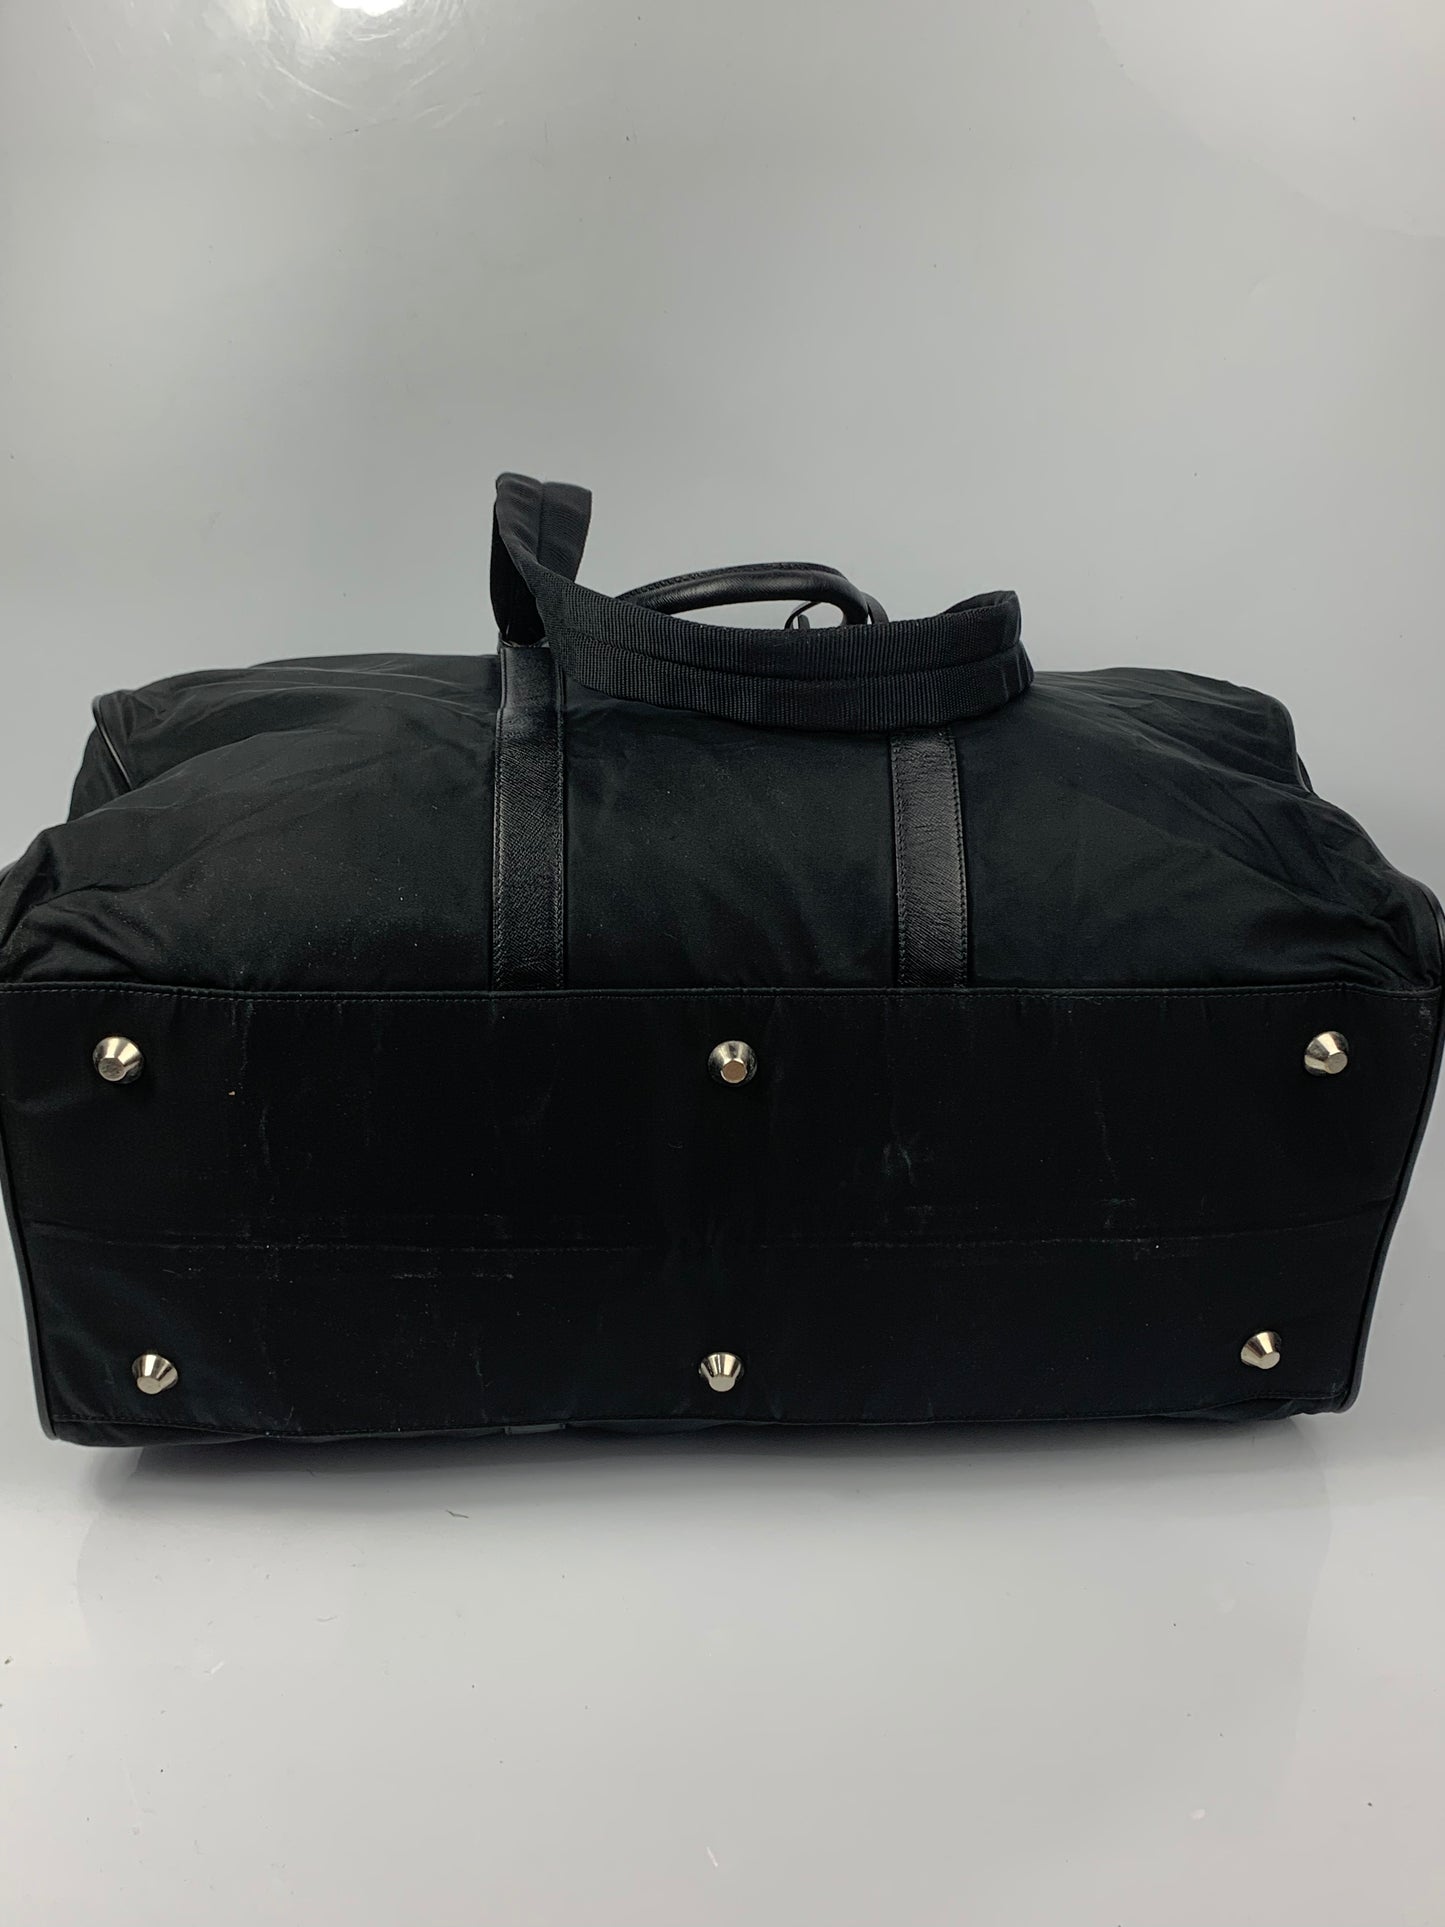 Prada Black Saffiano Duffle Shoulder Bag